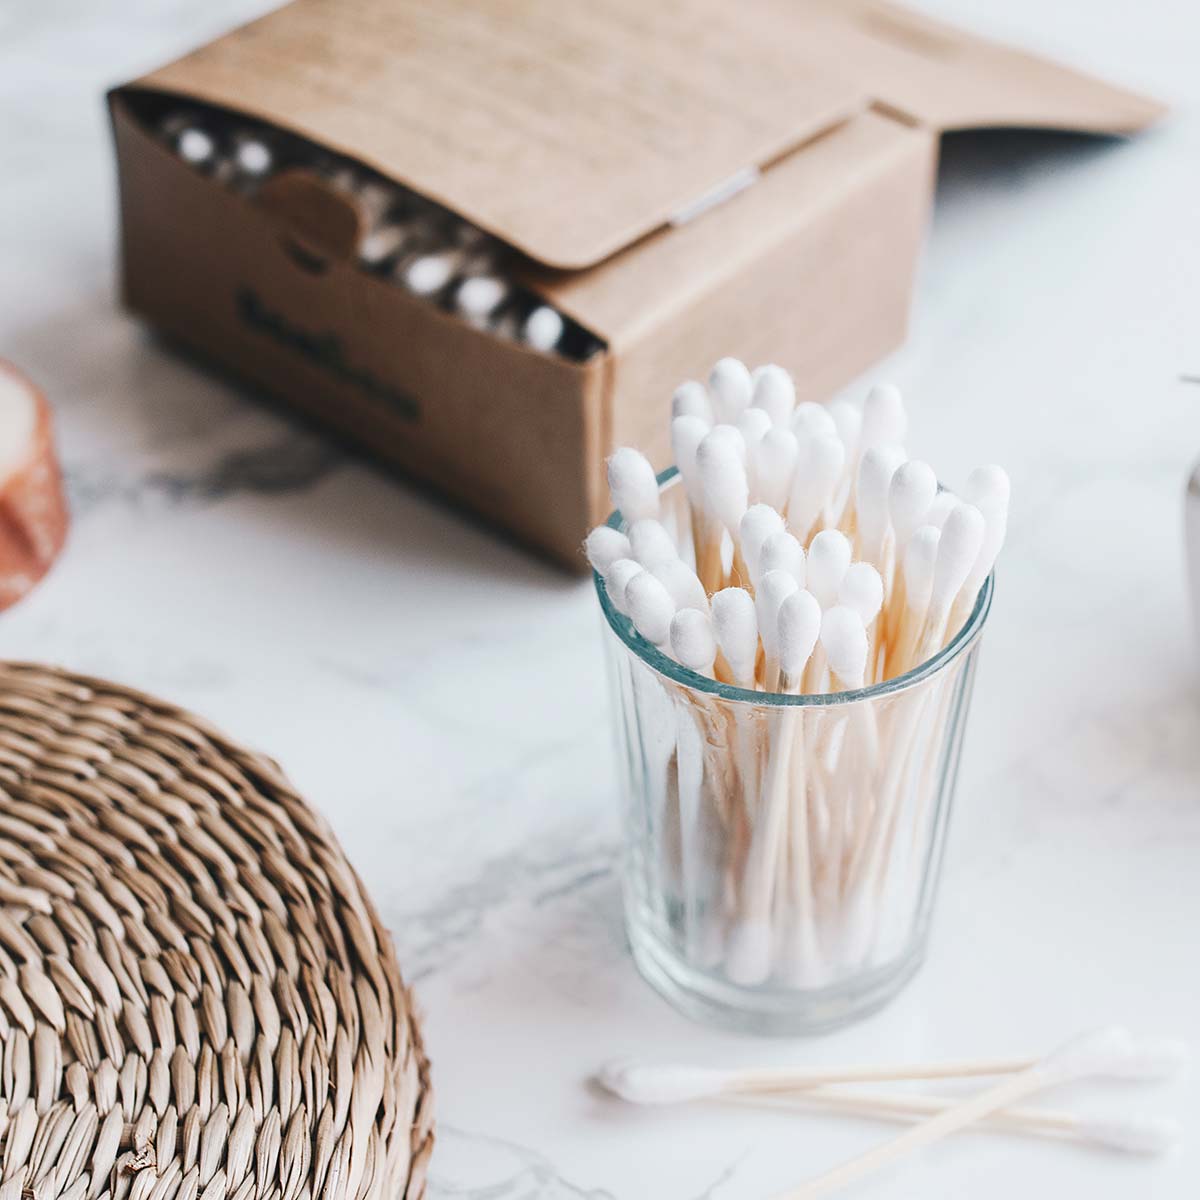 Scatola porta cotton fioc con copertura in bambù Organizzatore per  contenitori in cotone per trucco – i migliori prodotti nel negozio online  Joom Geek